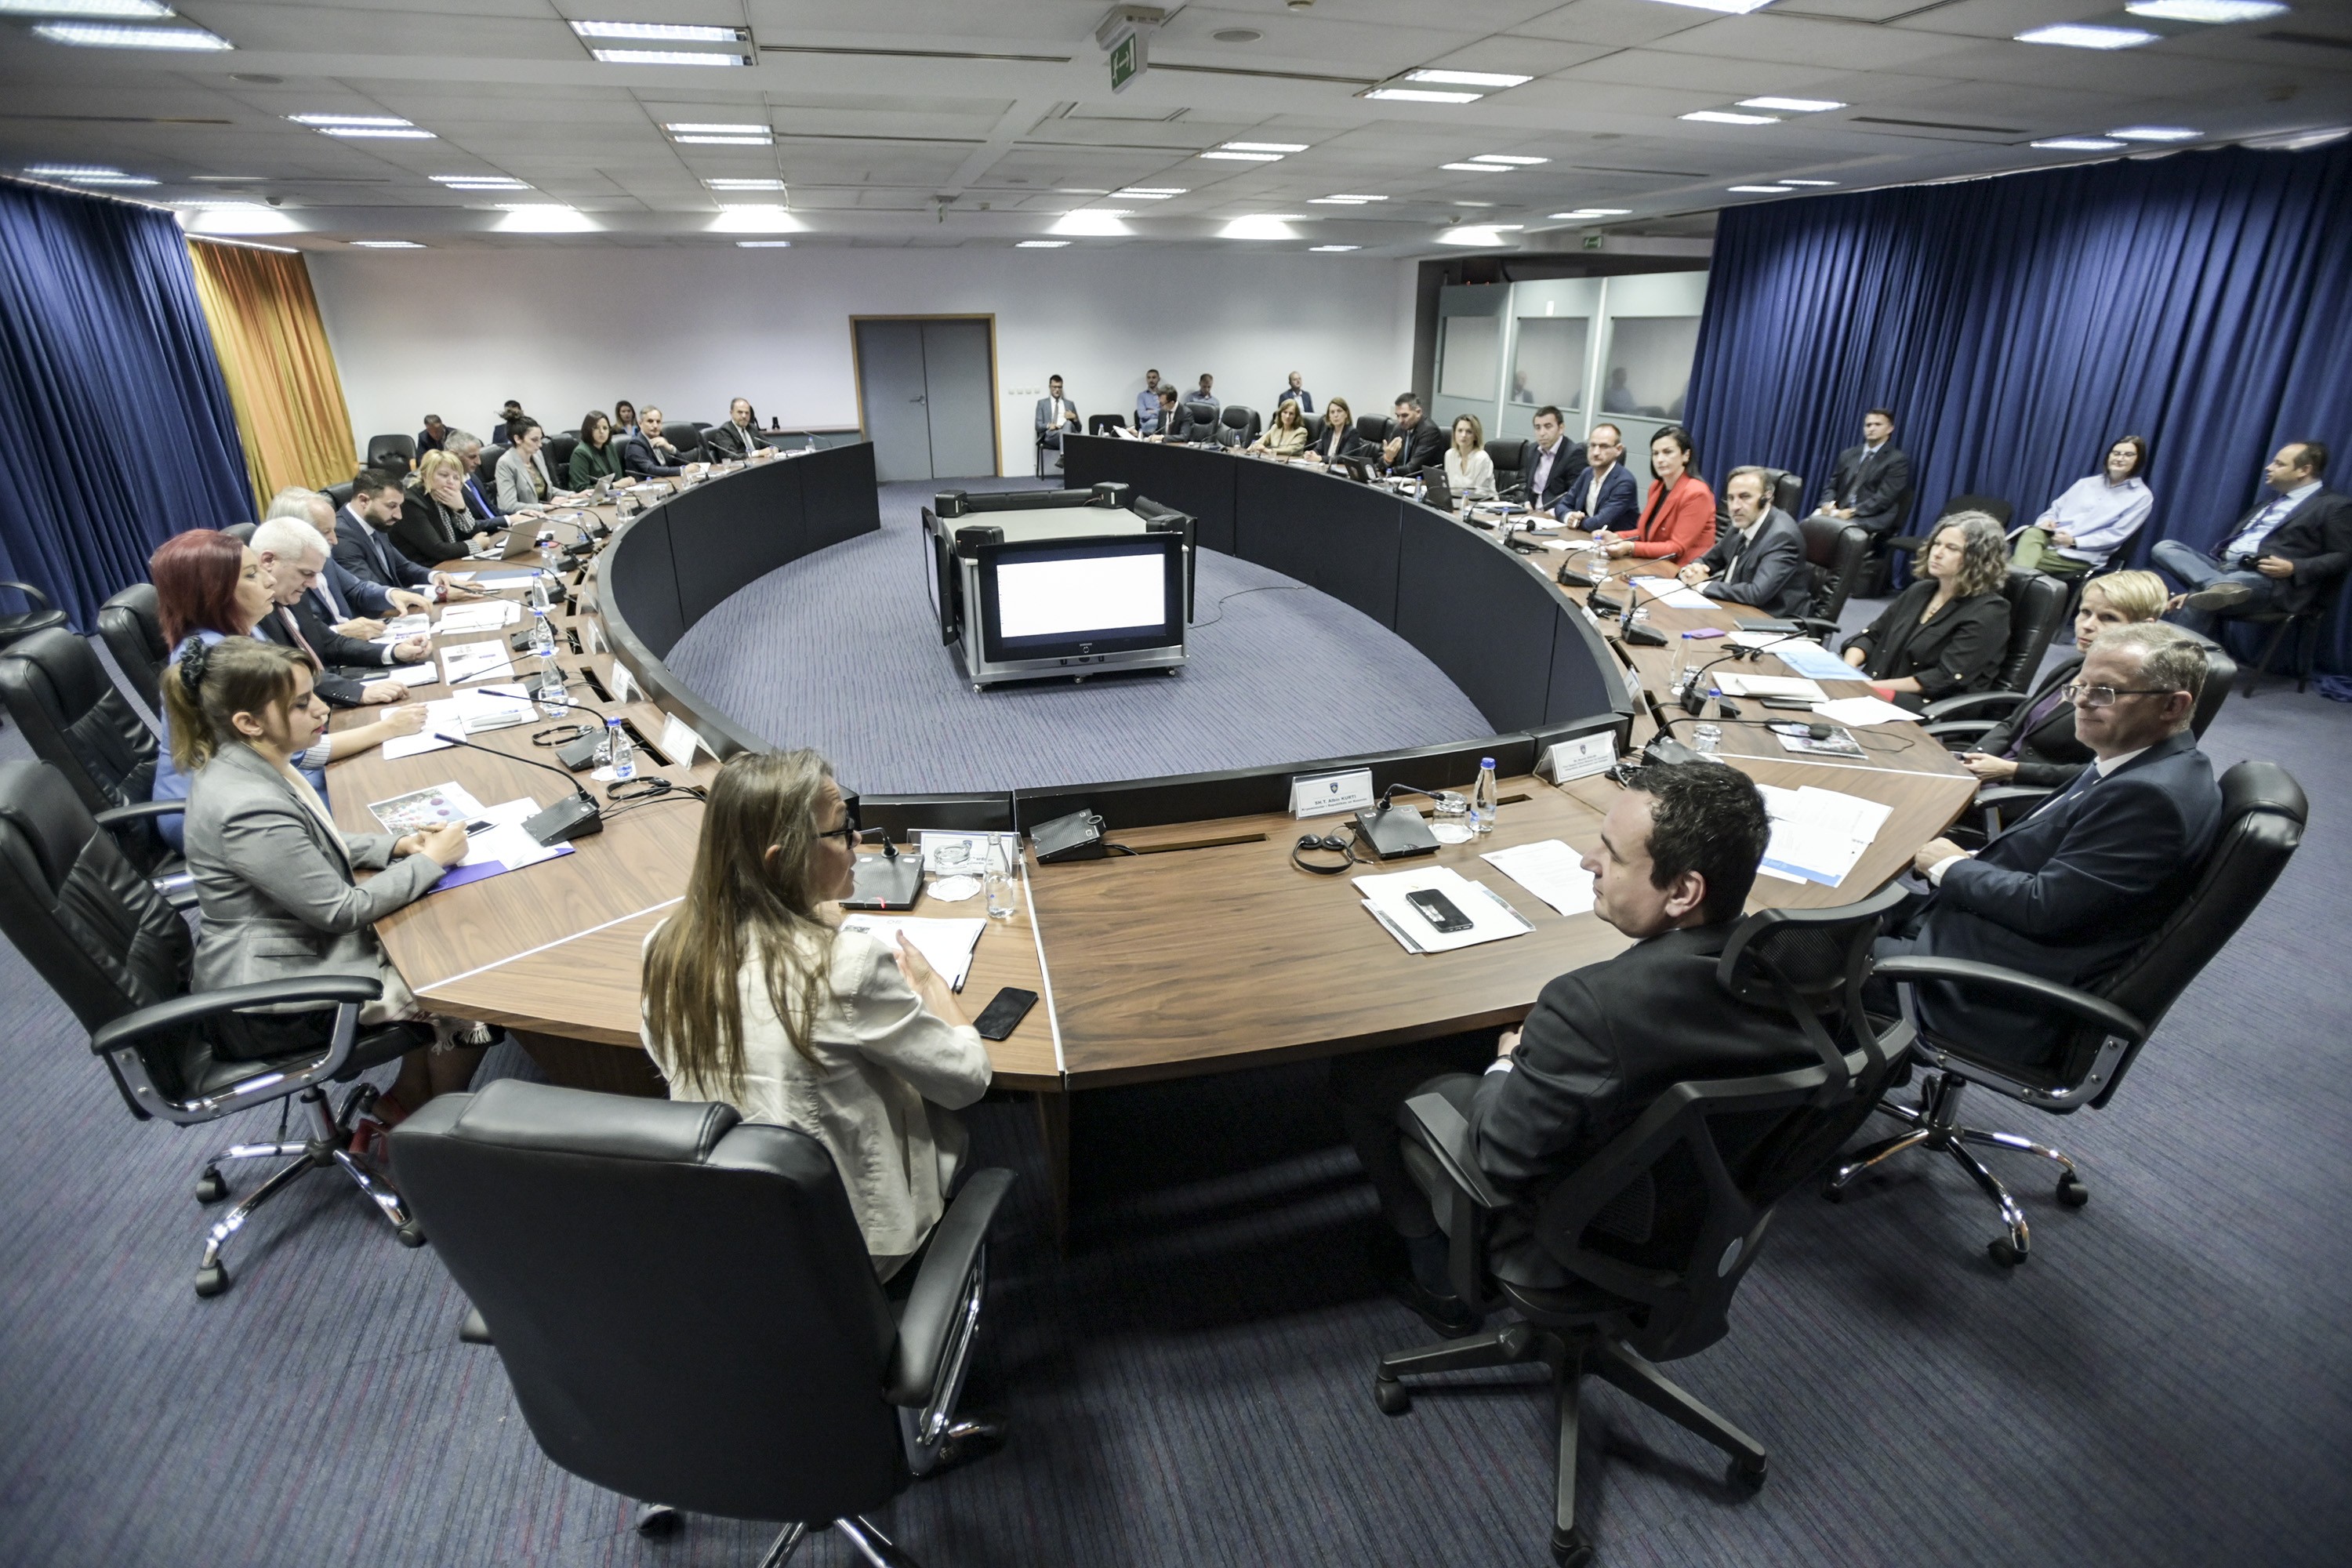 Mbahet takimi i dytë  i Komitetit Drejtues të UNSDCF për periudhën 2021-2025